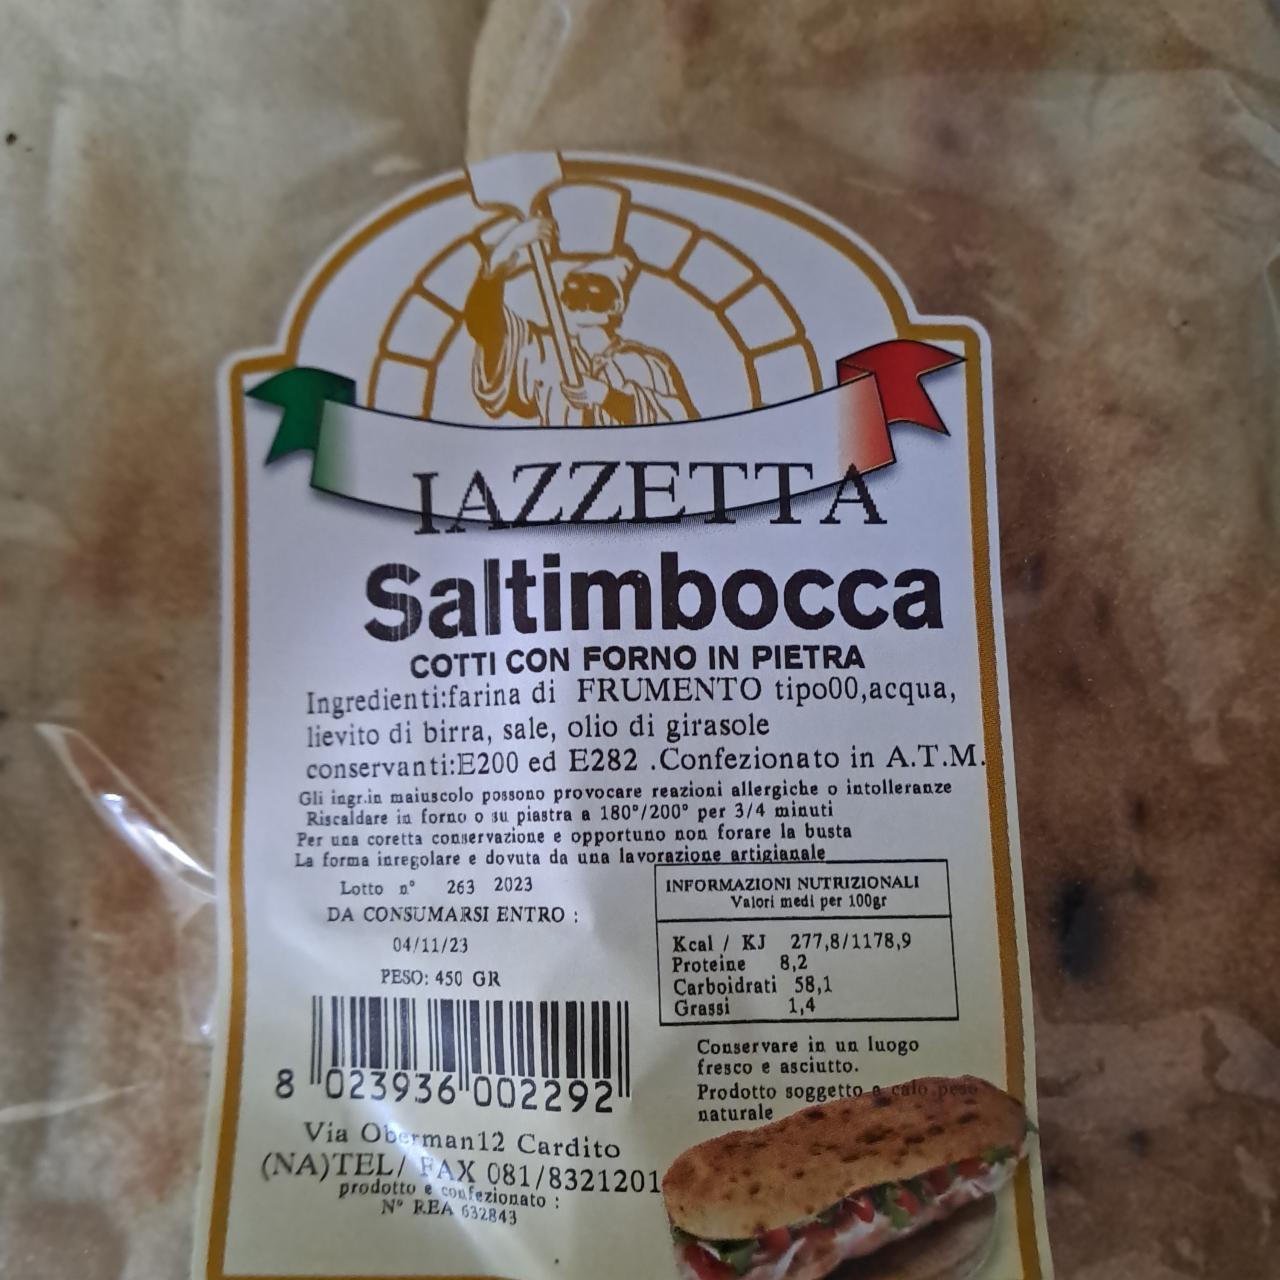 Fotografie - Saltimbocca cotto con forno in pietra Iazzetta